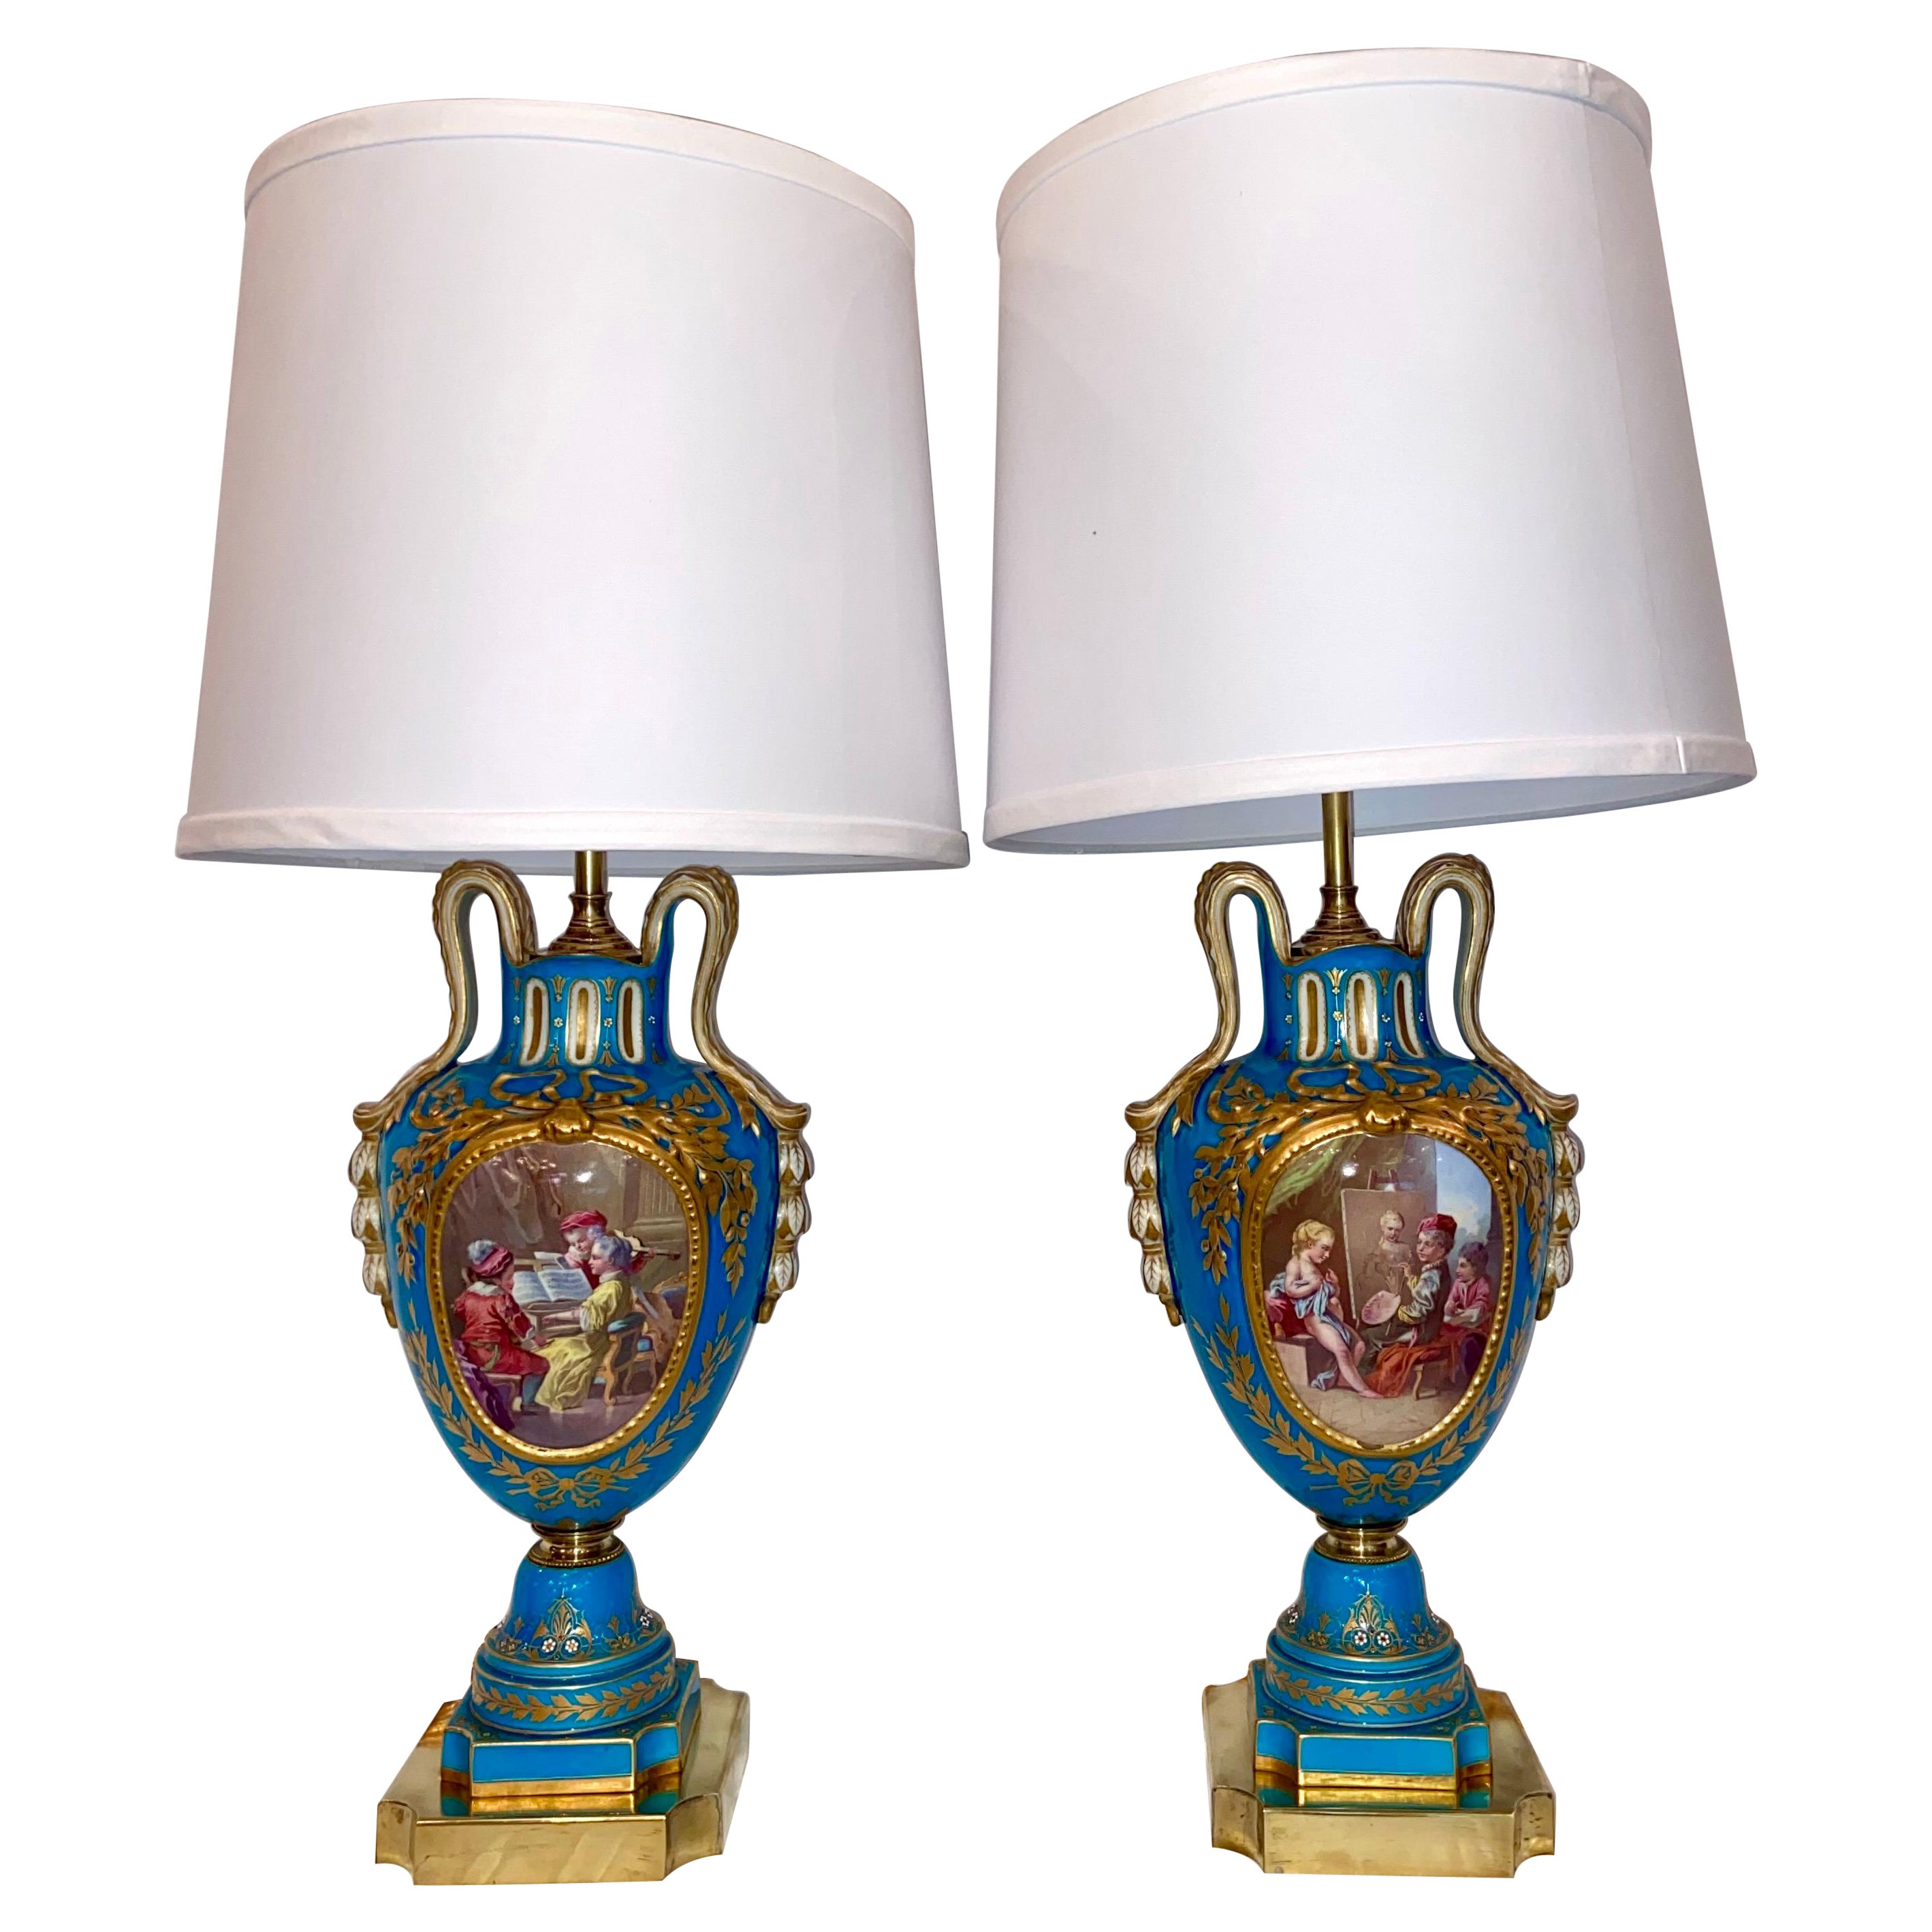 Pair Antique French Cyan Blue and Gold "Vieux Paris" Porcelain Lamps, Circa 1880 For Sale